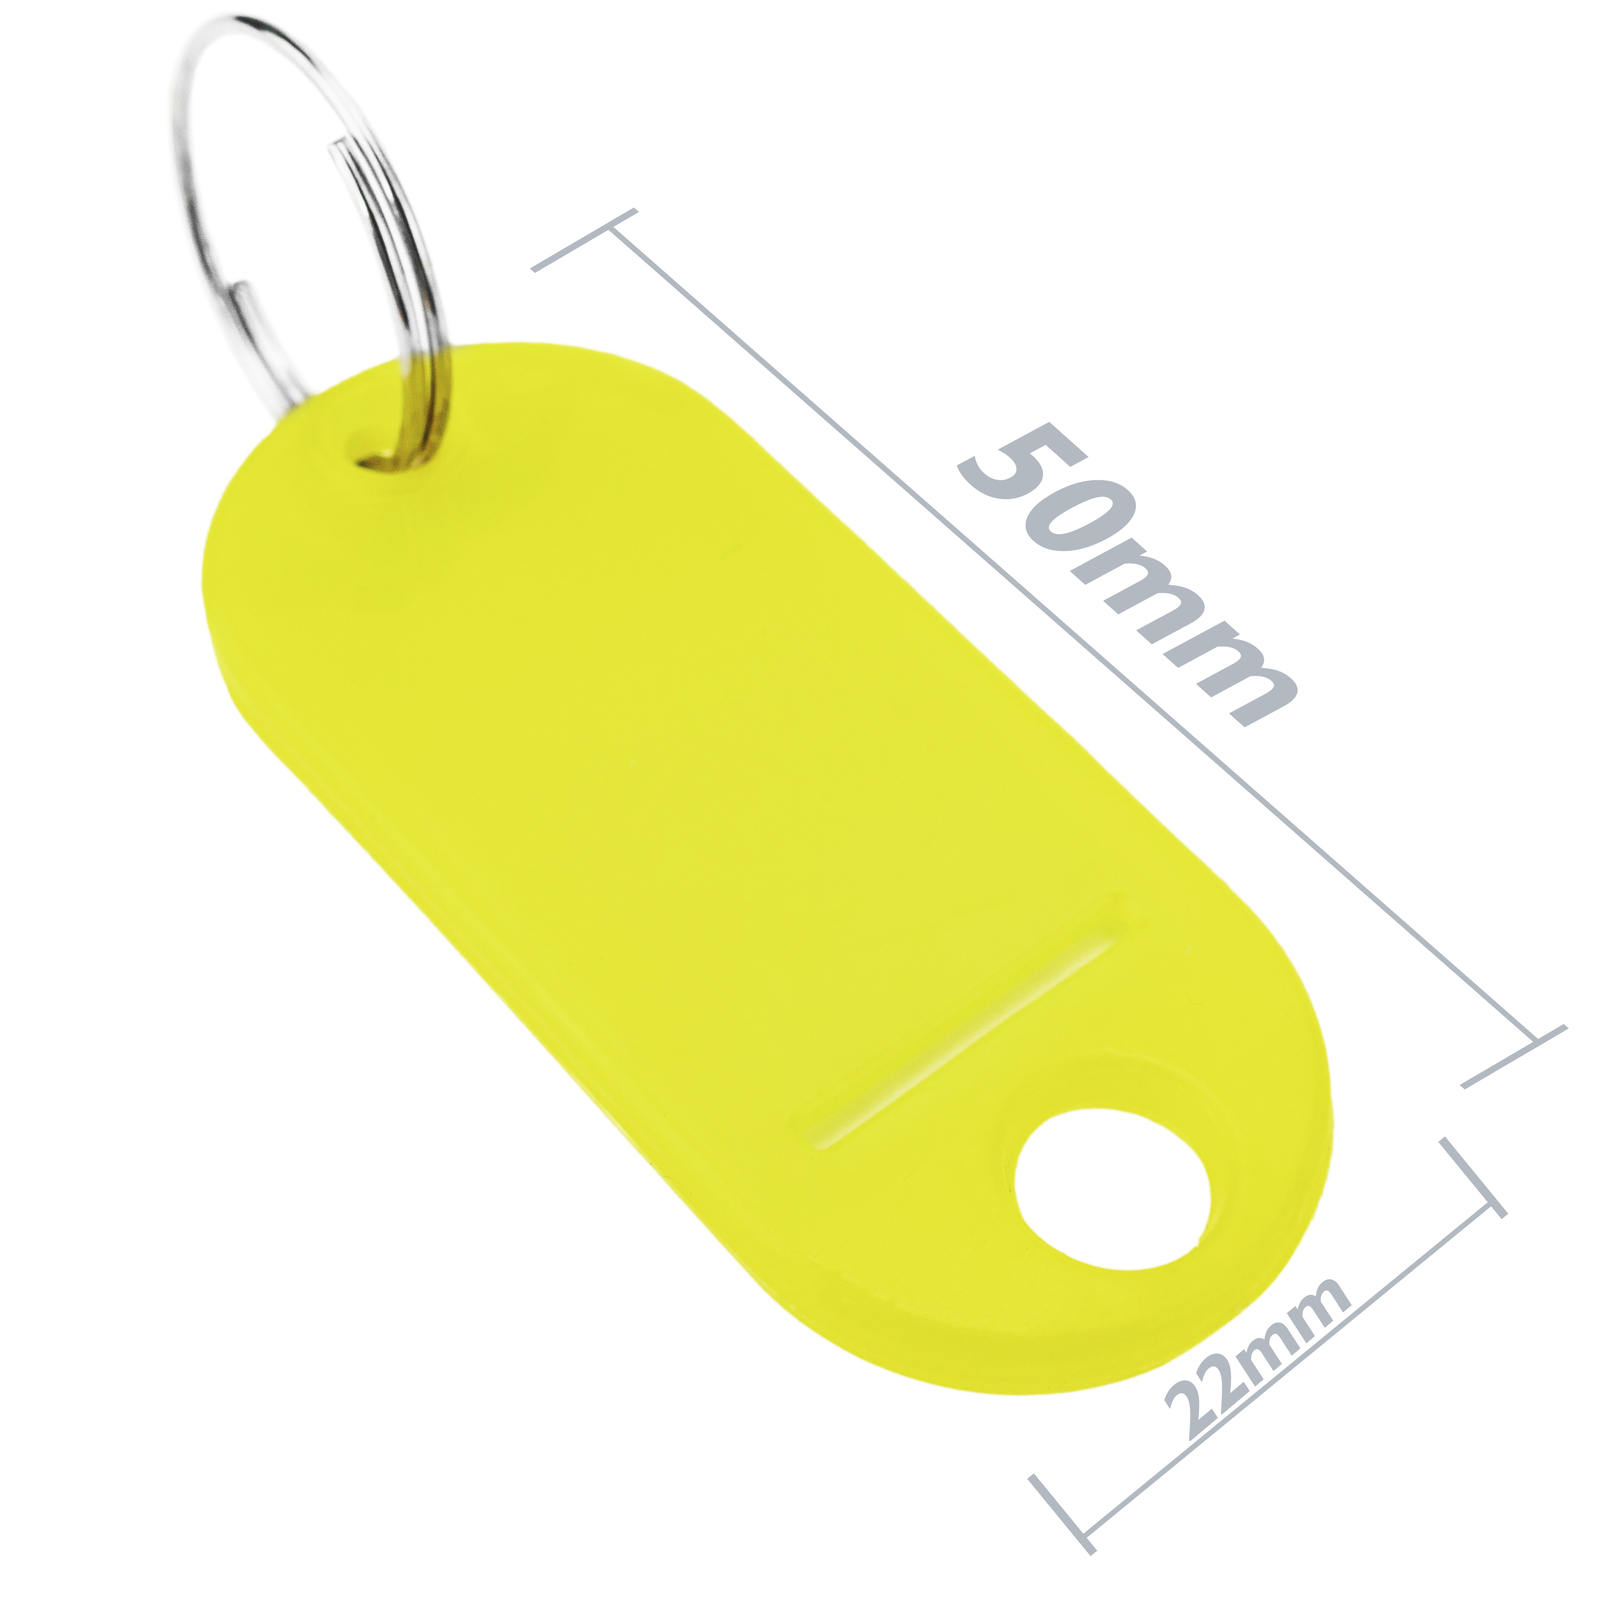 Porte-clés de voiture en métal avec porte-clés logo 3d des deux côtés pour  accessoires - SENEGAL ELECTROMENAGER